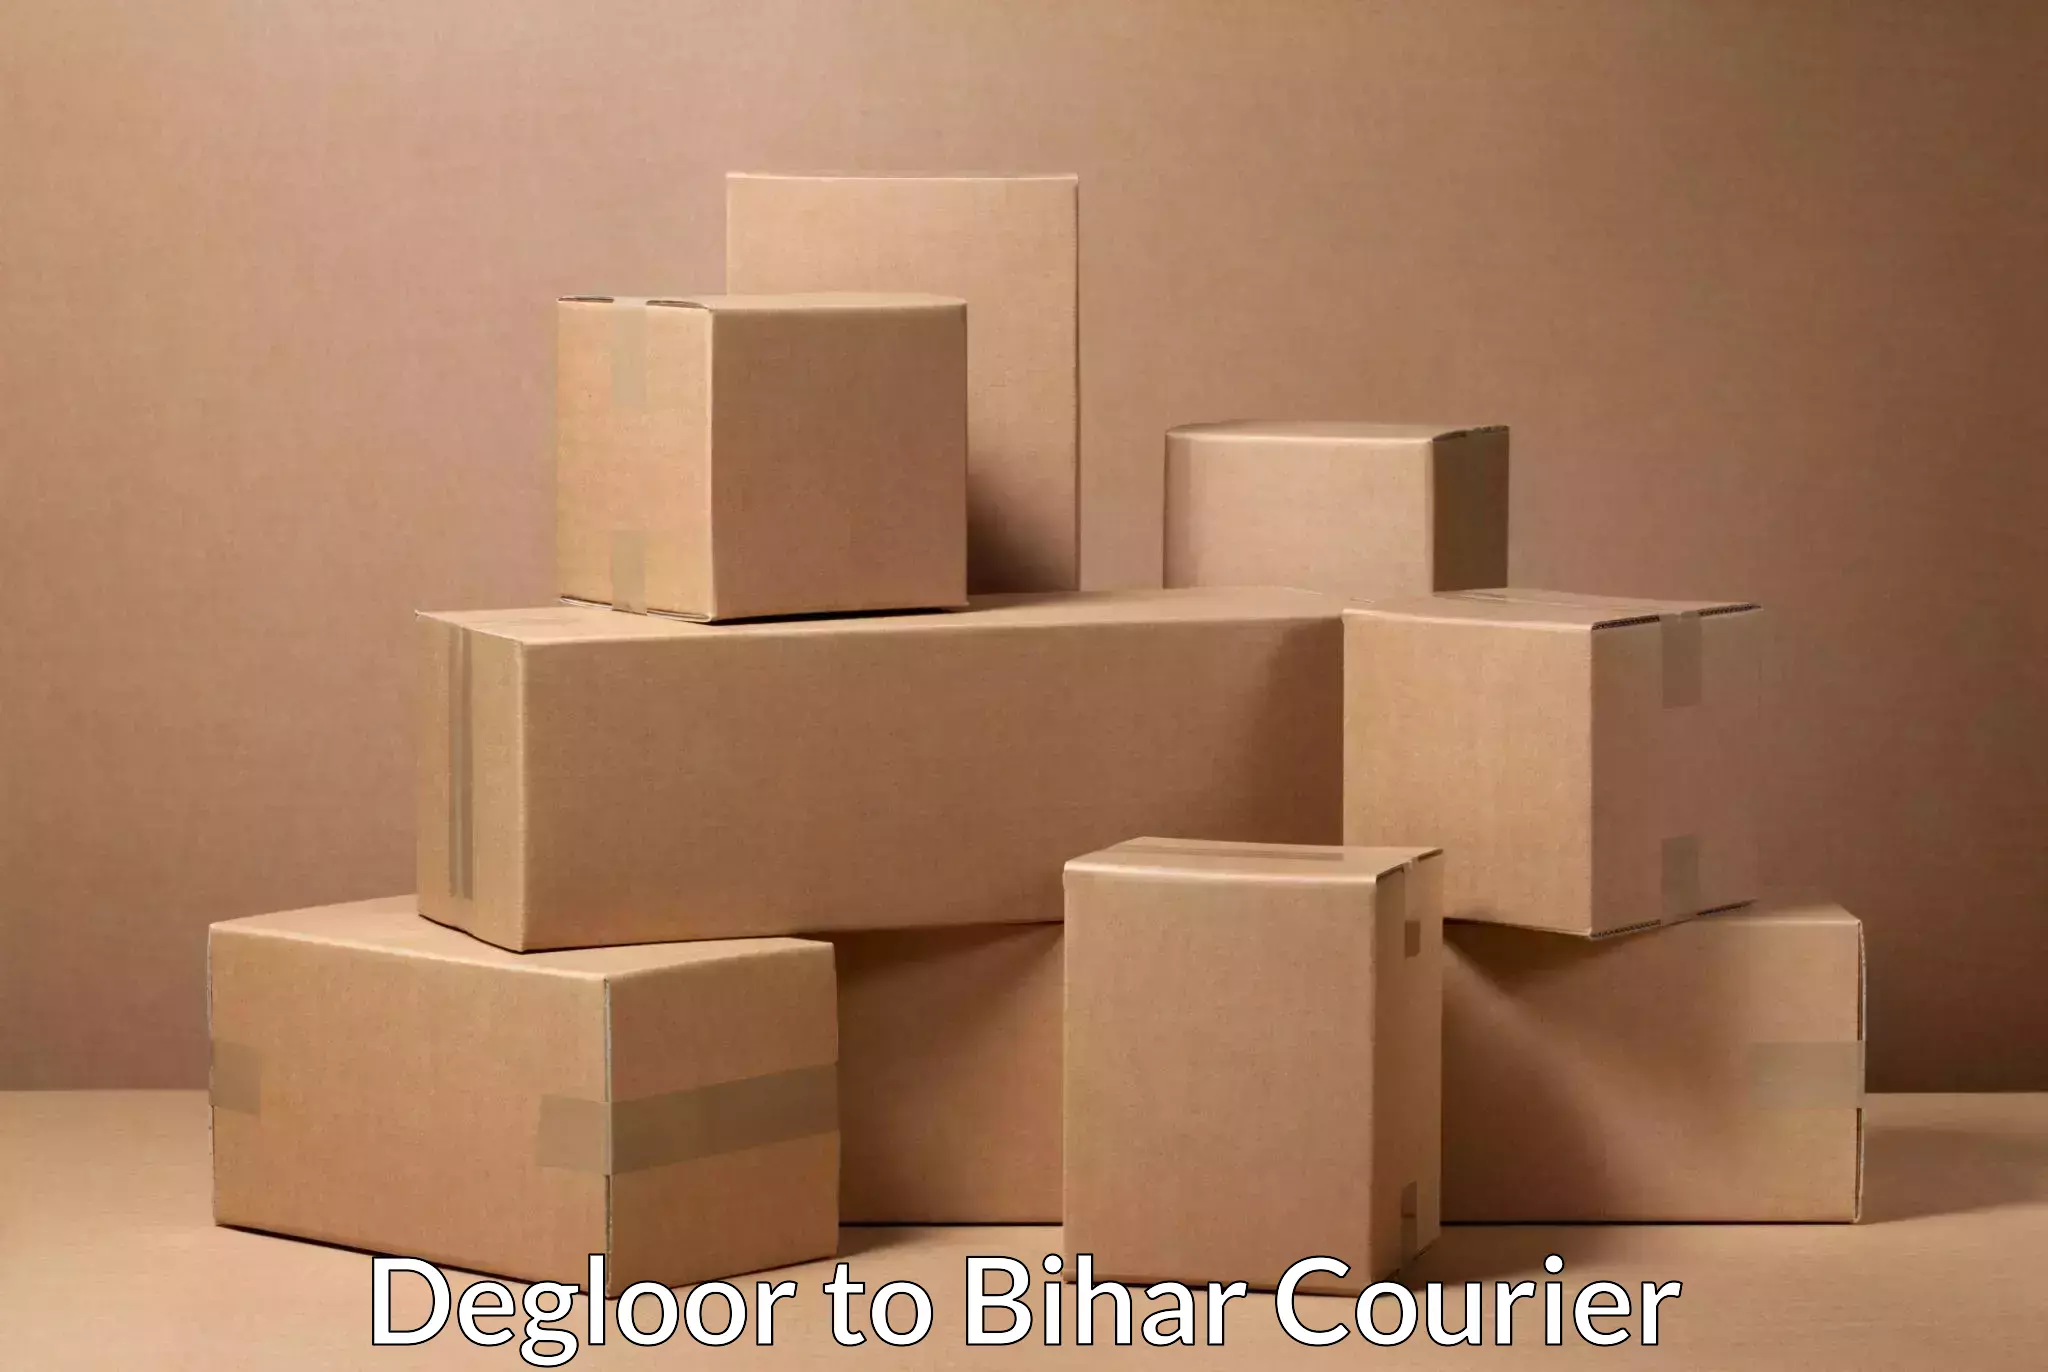 International courier rates Degloor to Bihar